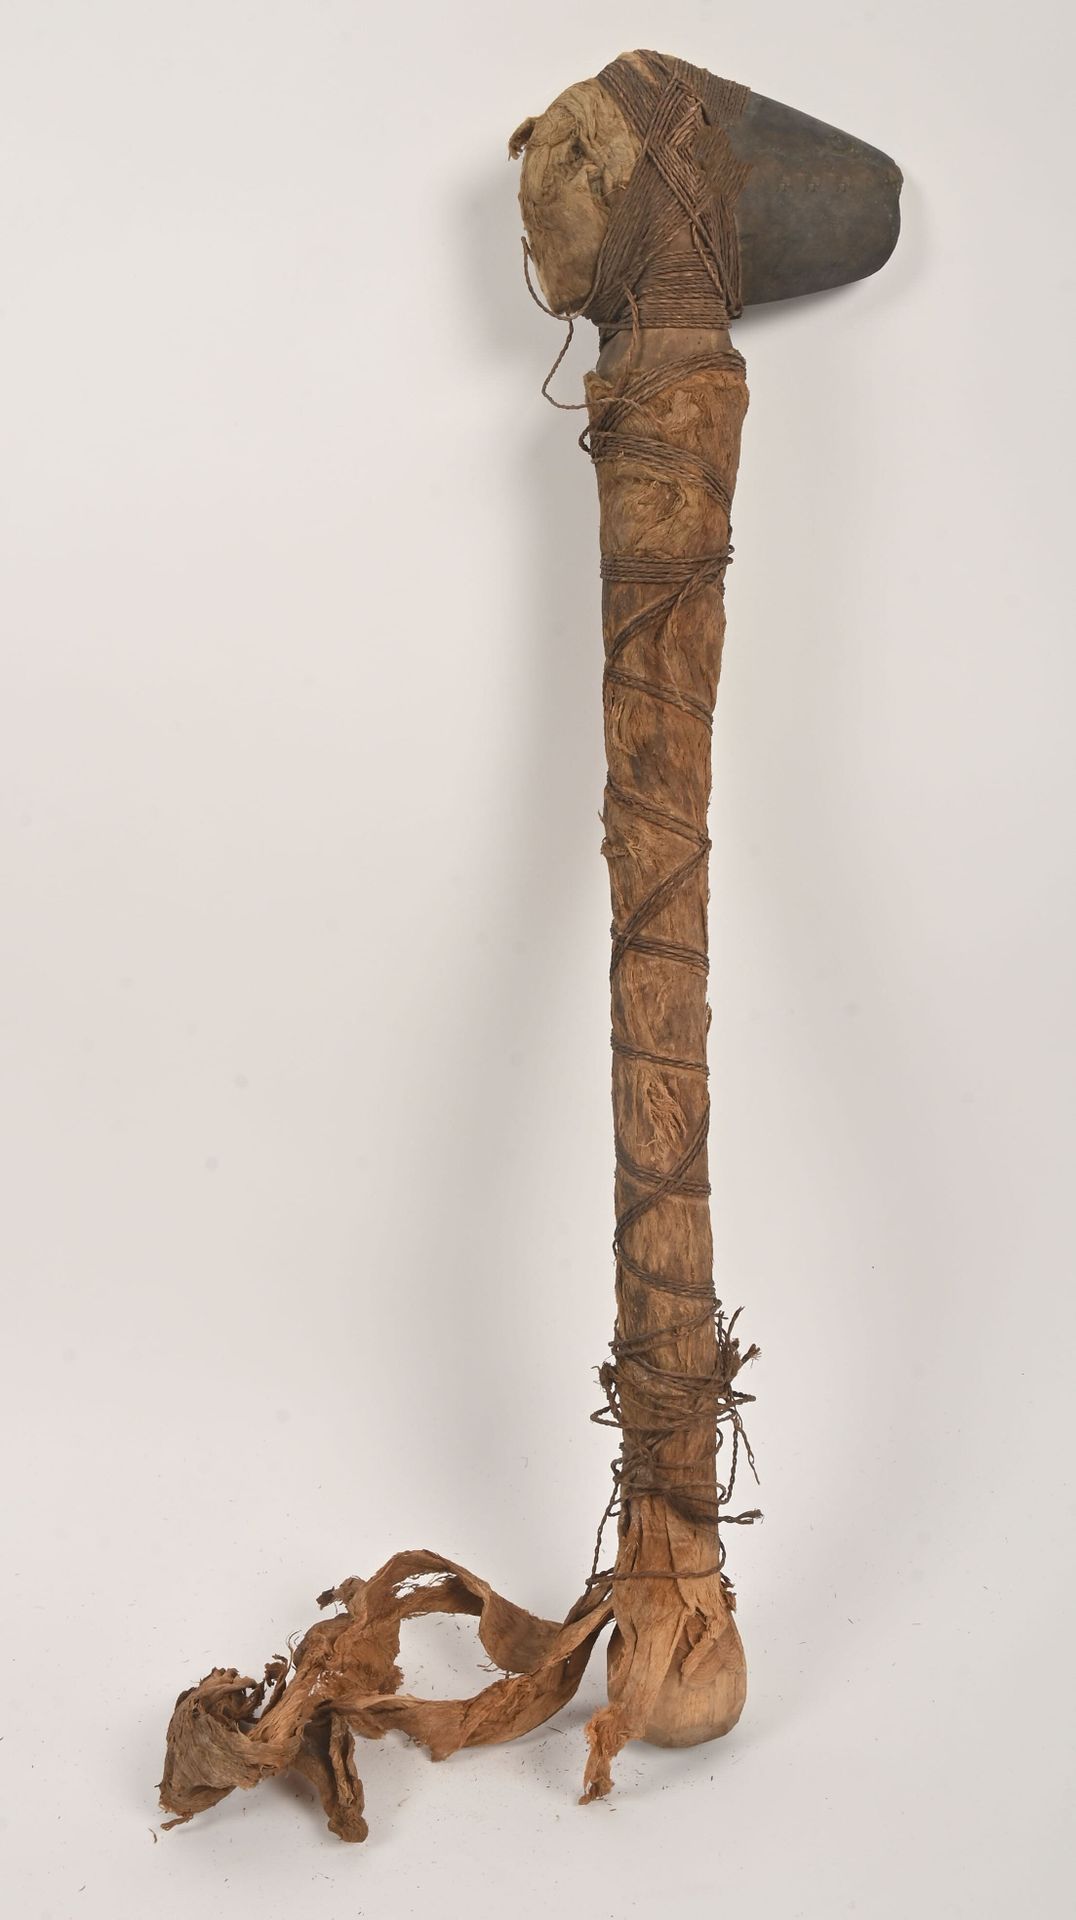 Null 卡纳克，新喀里多尼亚。
木头，拍打过的树皮韧皮（Tapa），植物纤维，石头。
罕见的非常古老的斧头，圆形的长木柄完全覆盖着用植物纤维捆绑的tapa，石&hellip;